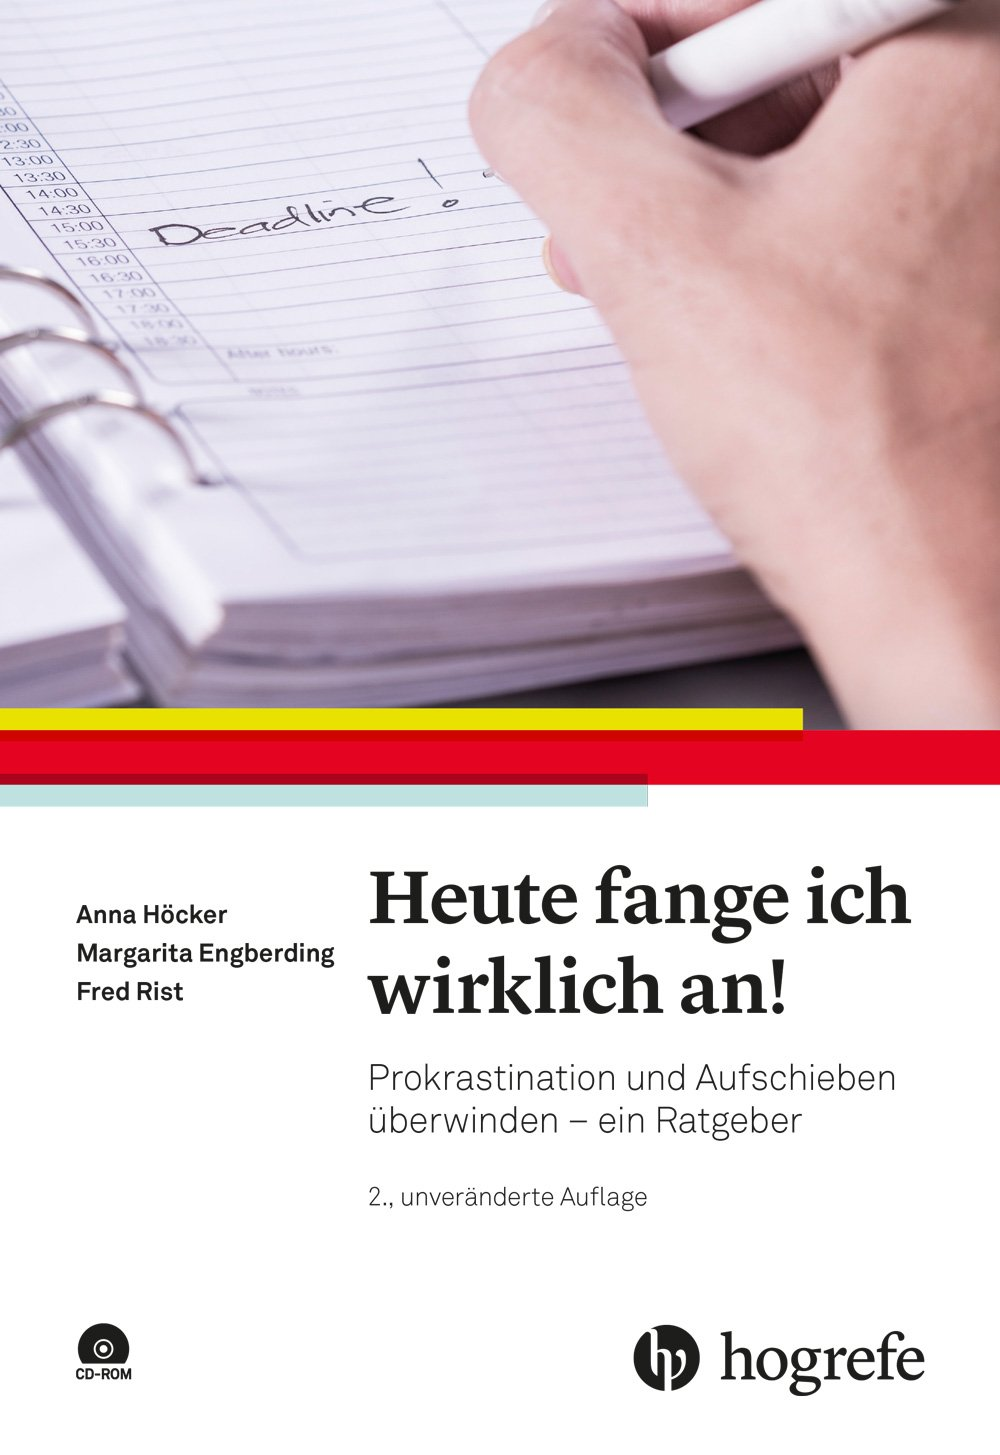 Anna Höcker Ratgeber Prokrastination und Aufschieben - Cover